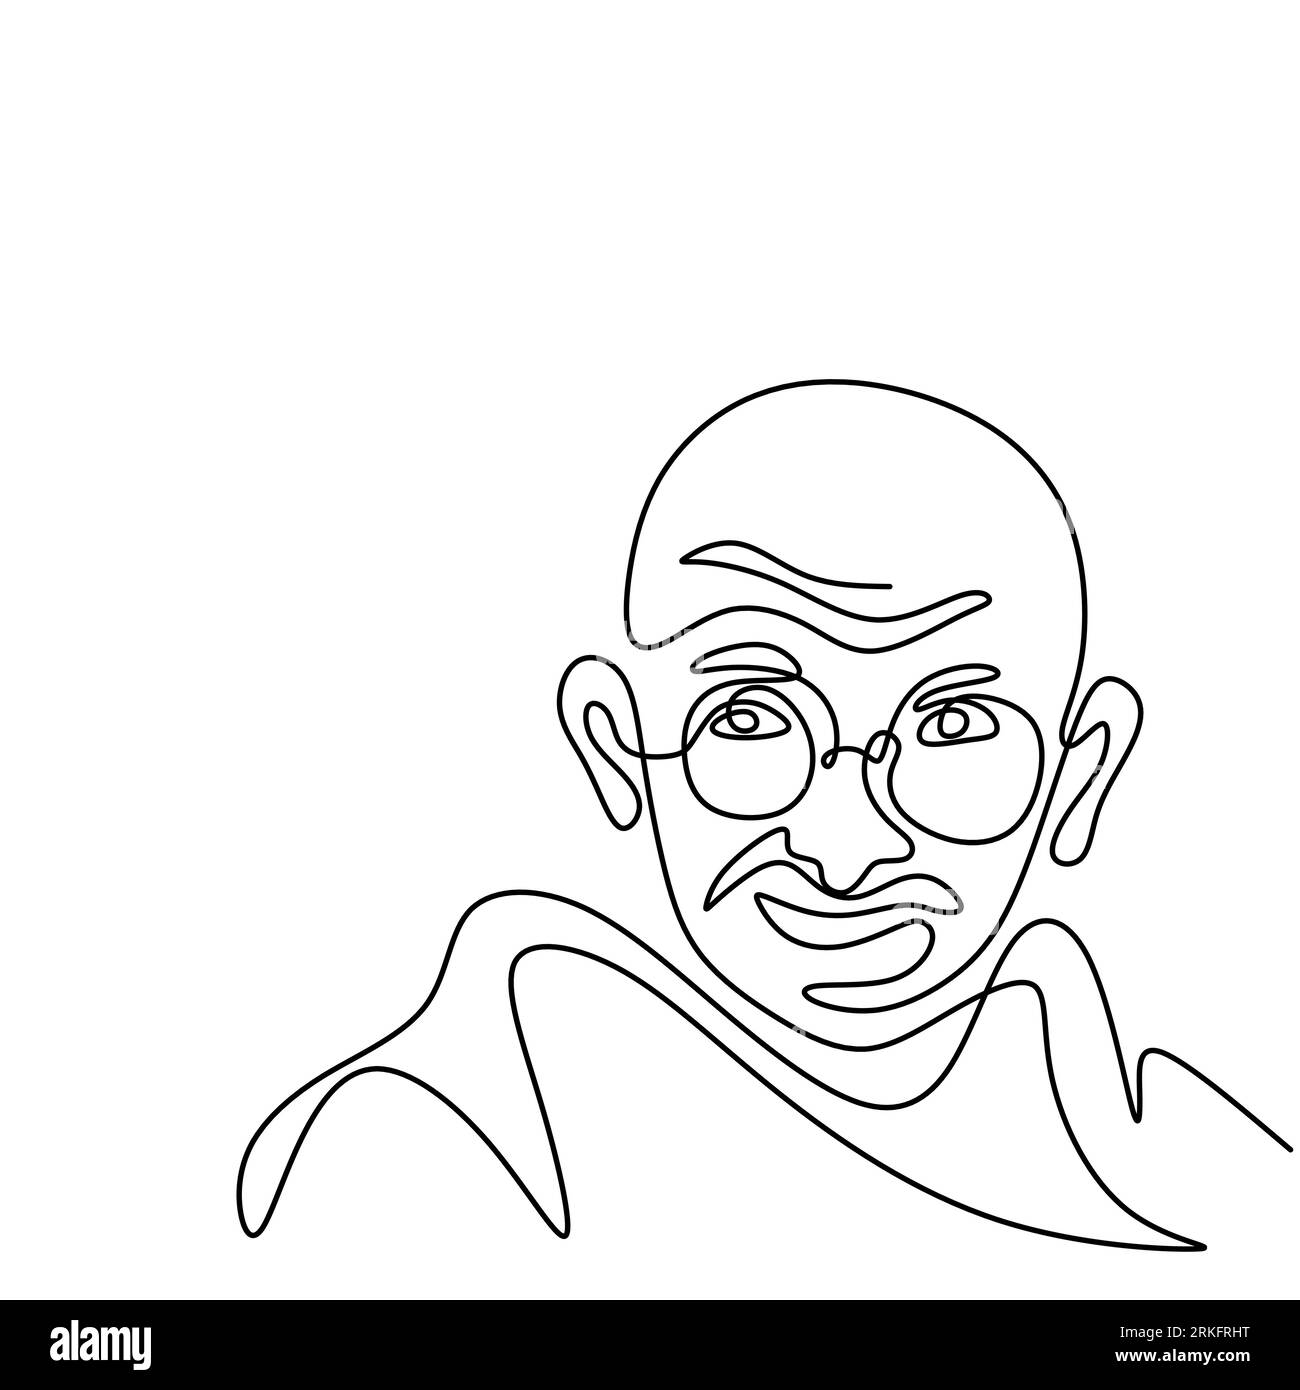 Disegno continuo a una linea del Mahatma Gandhi. Un avvocato indiano, nazionalista anti-coloniale ed eticista politico. Il capo dell'independe indiano Illustrazione Vettoriale